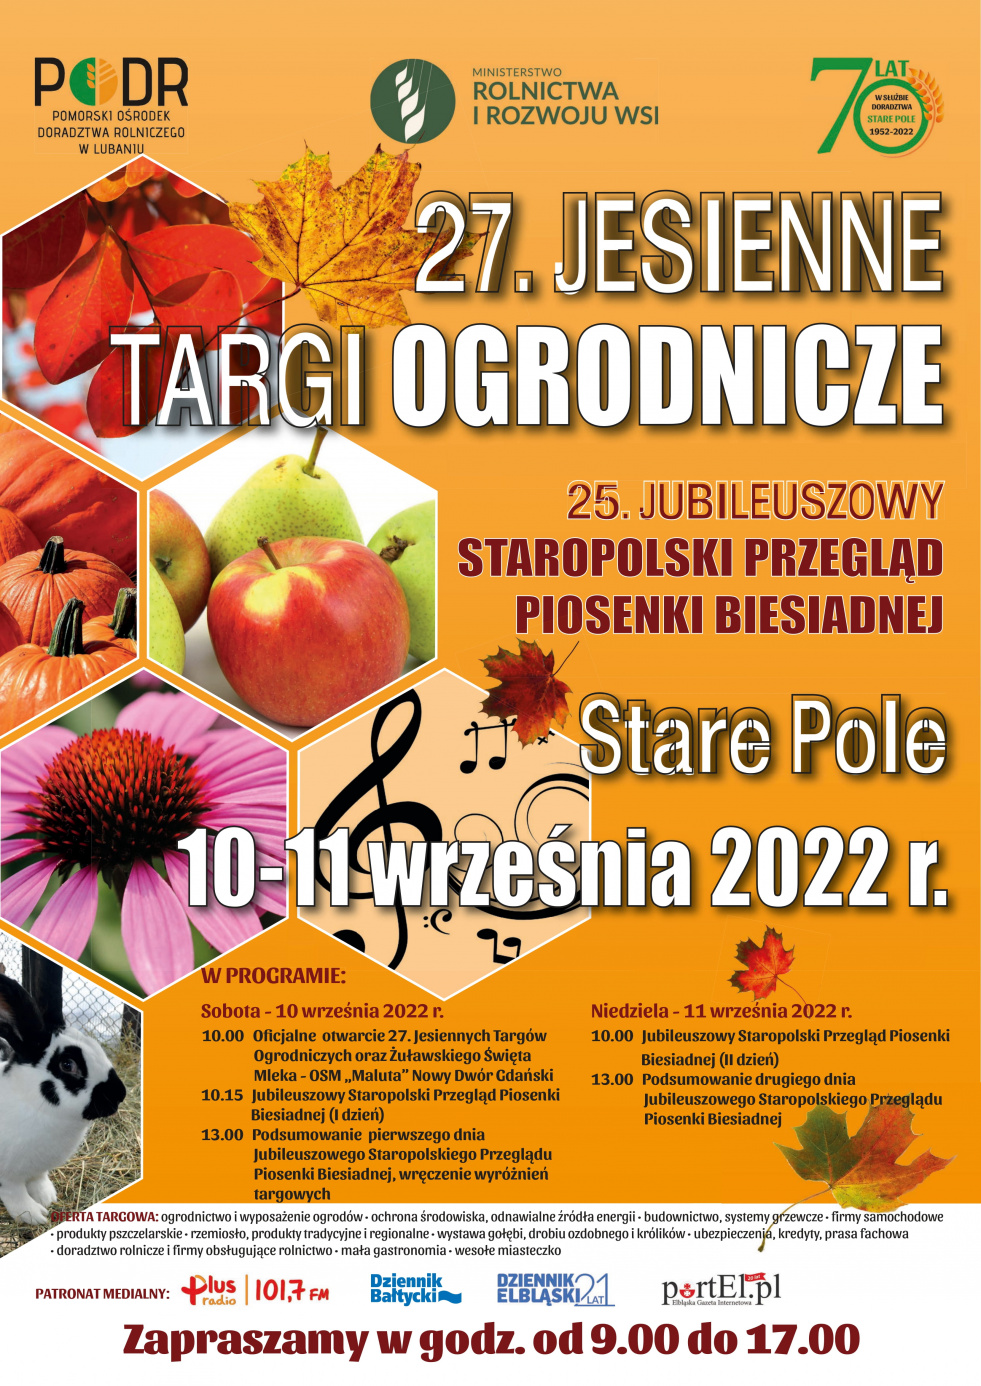 Targi ogrodnicze w Starym Polu - 10-11.09.2022 r.